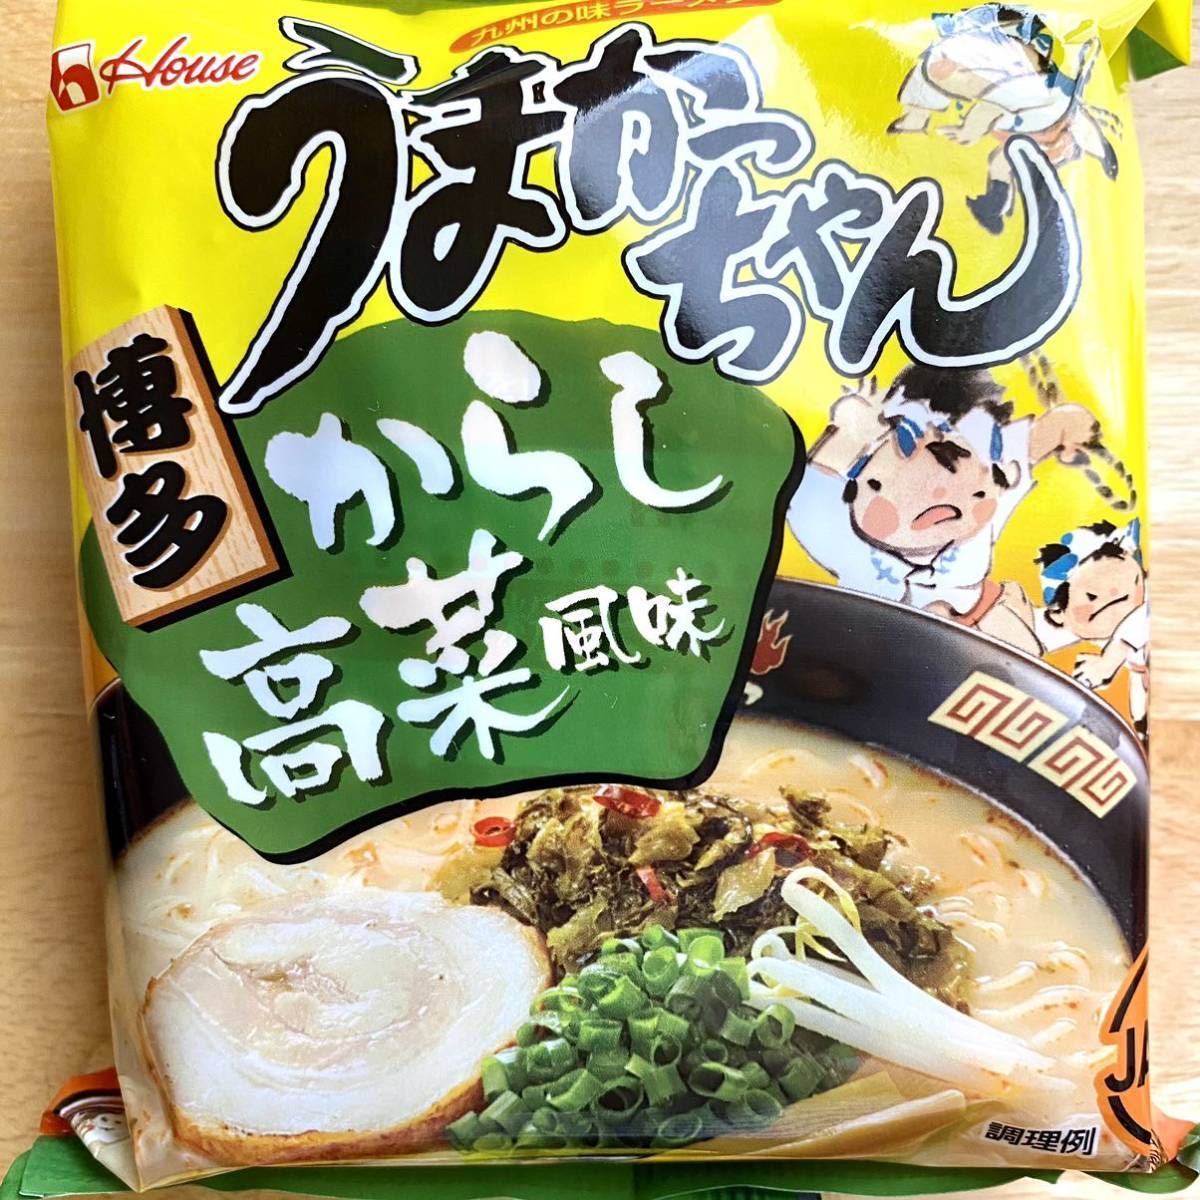 u... Chan 6 еда минут .... ramen Kyushu ramen мгновенный ramen набор ramen еда . сравнение консервированная еда аварийный запас товар 